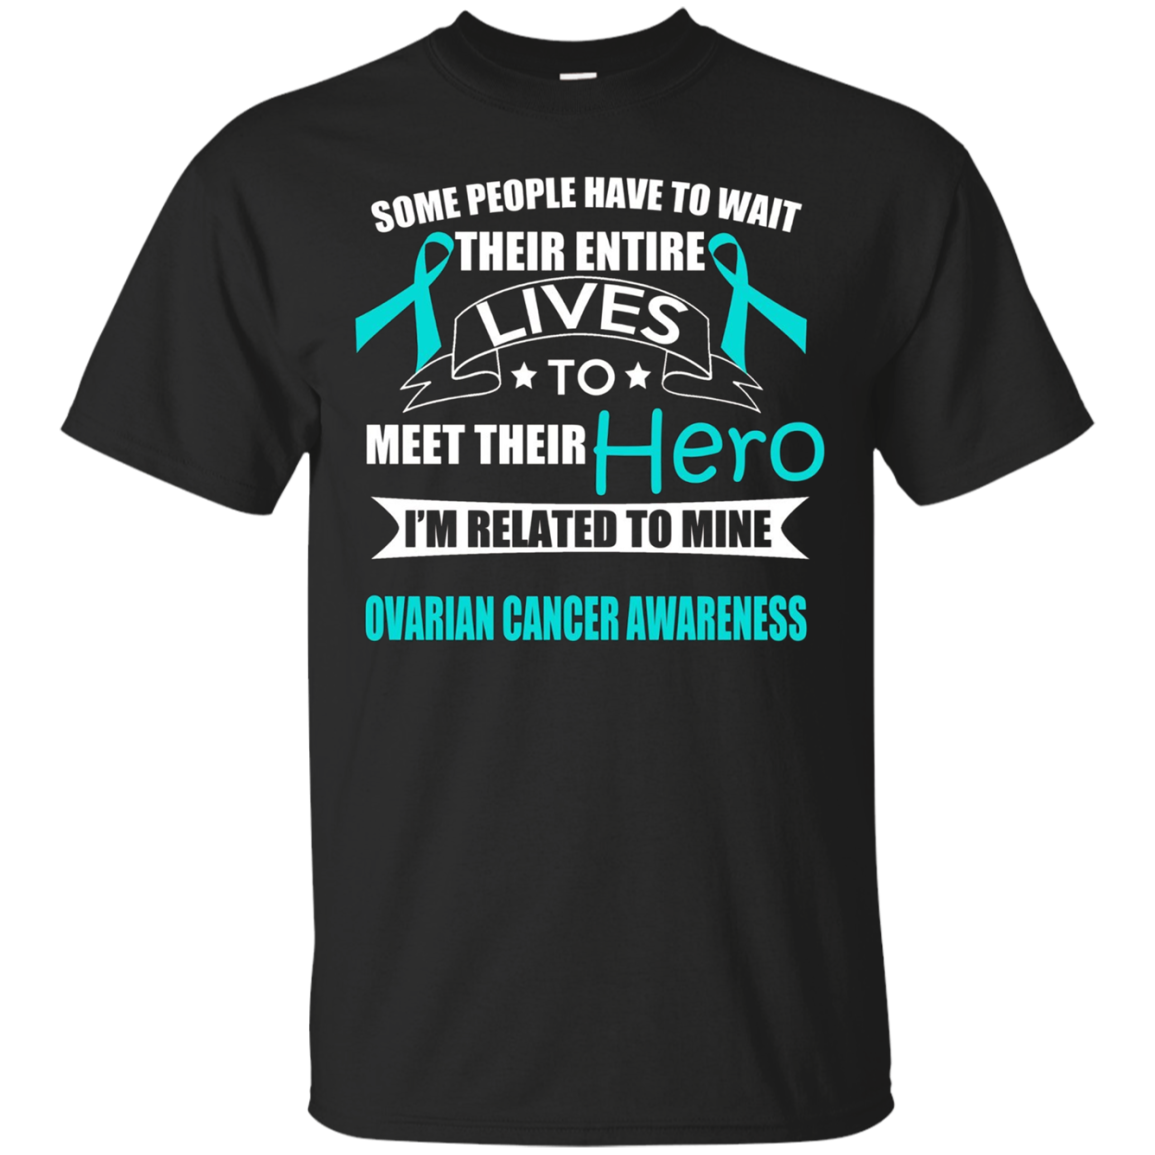 Support Ovarian Cancer Awareness T-shirt